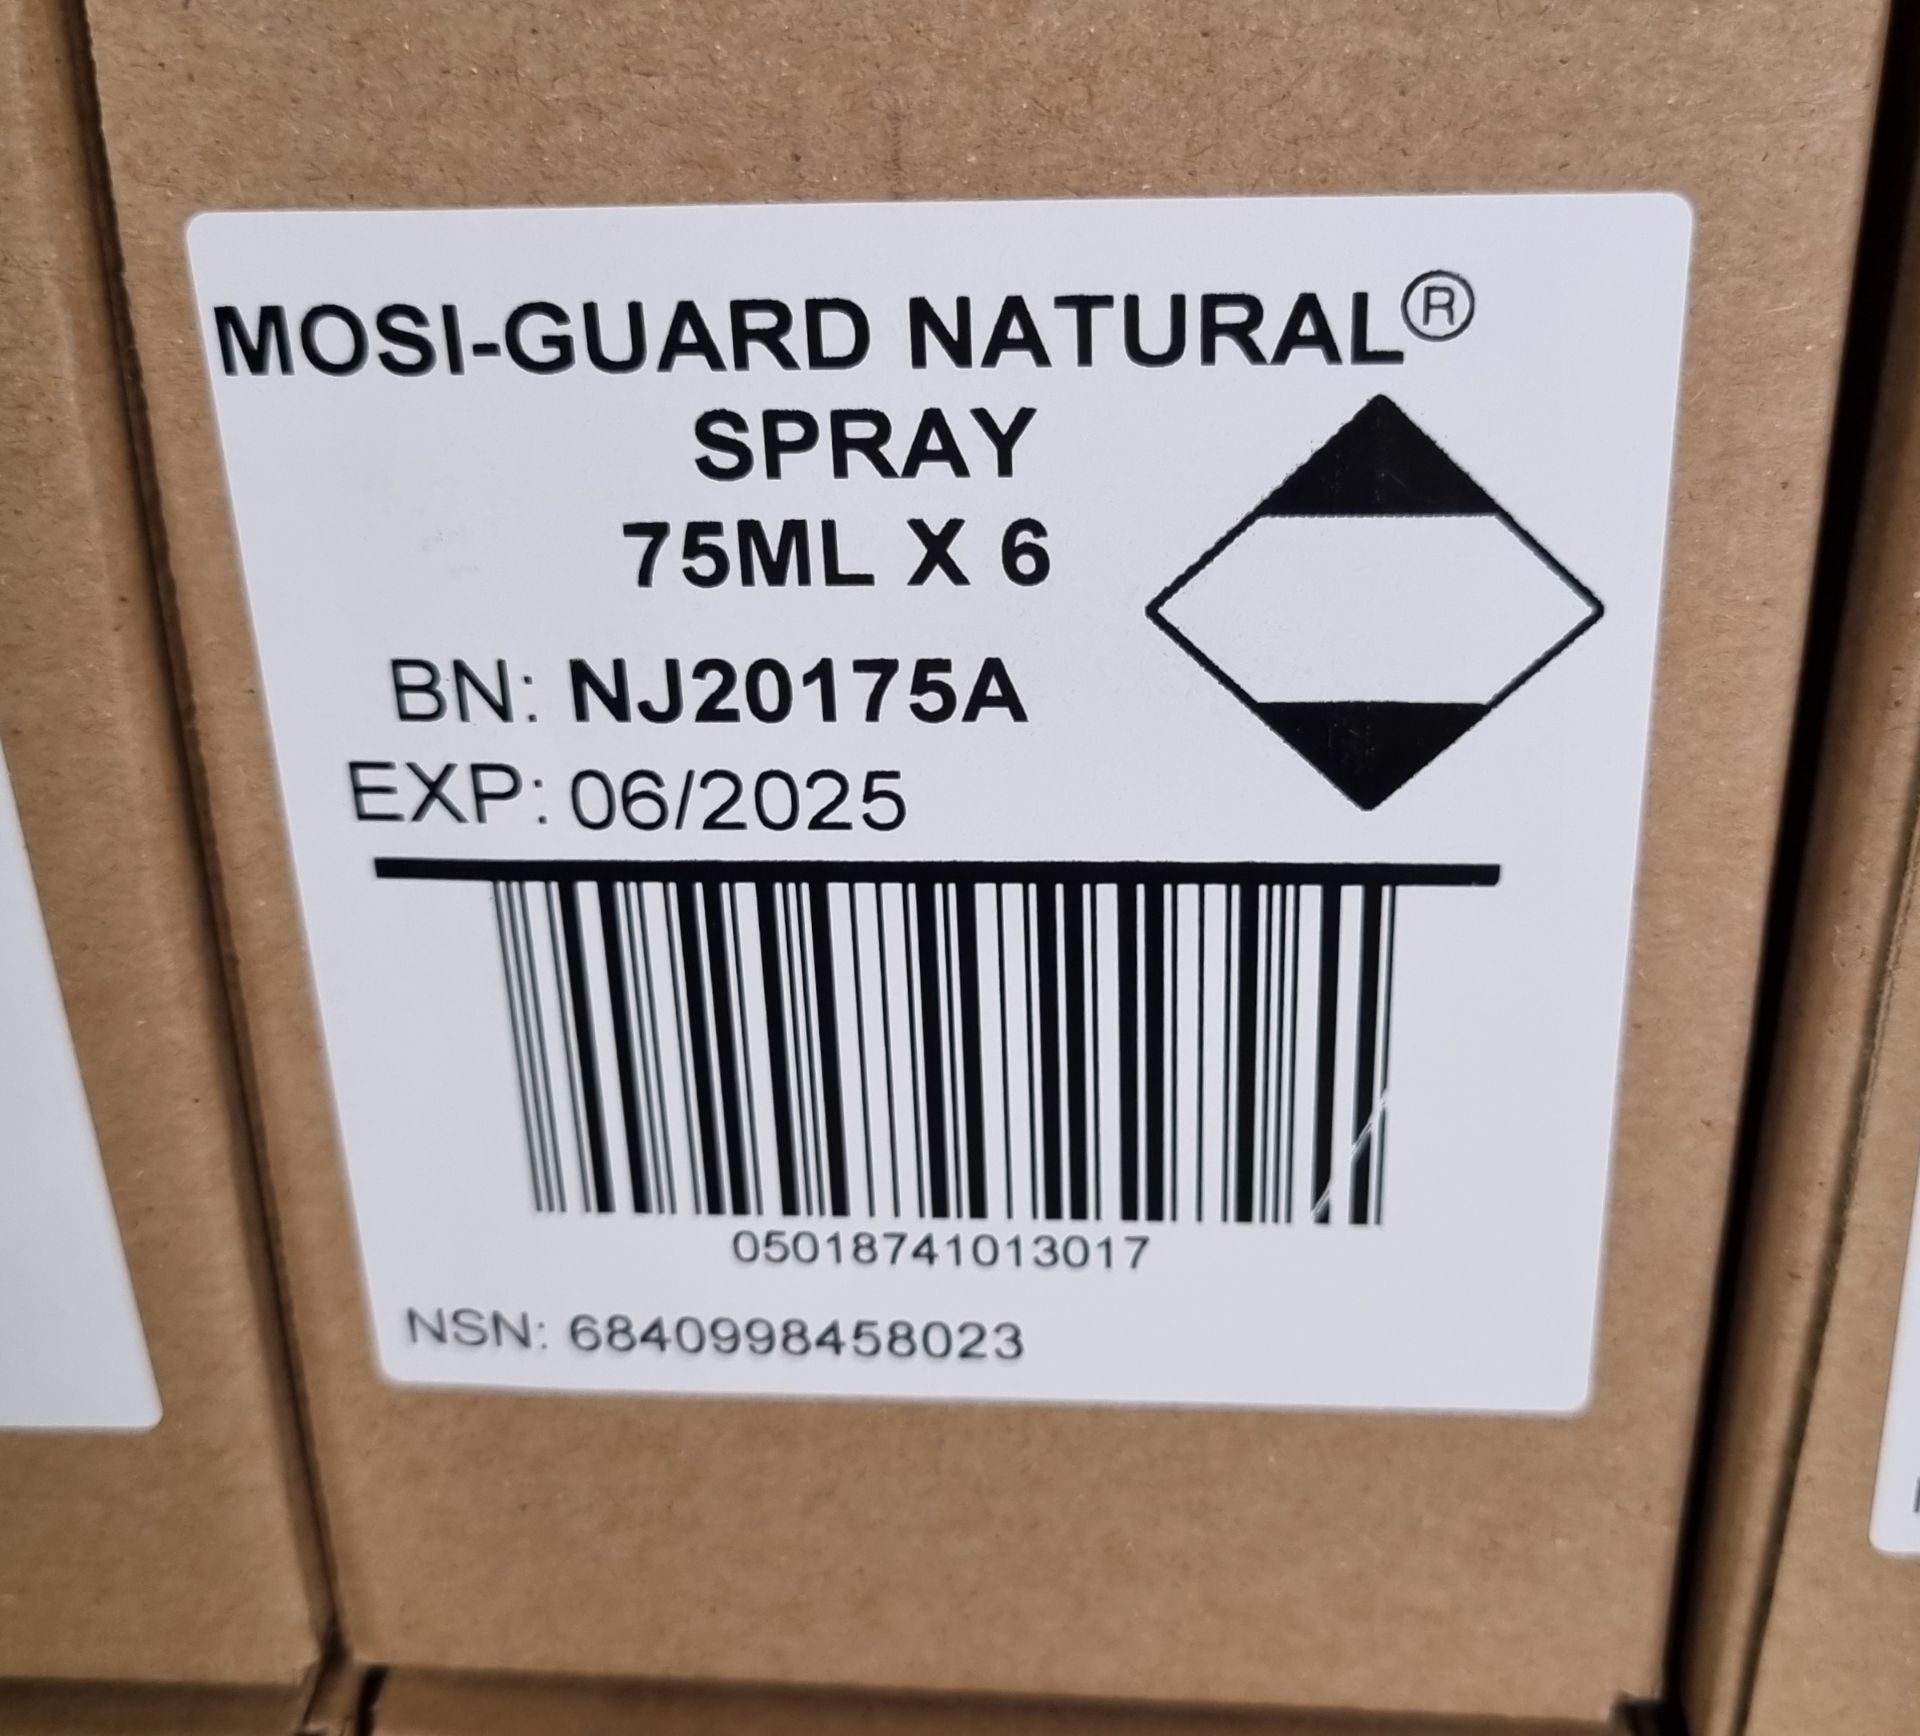 6x boxes of Mosi-Guard Natural Spray 75ml - 6 per box - Image 2 of 5